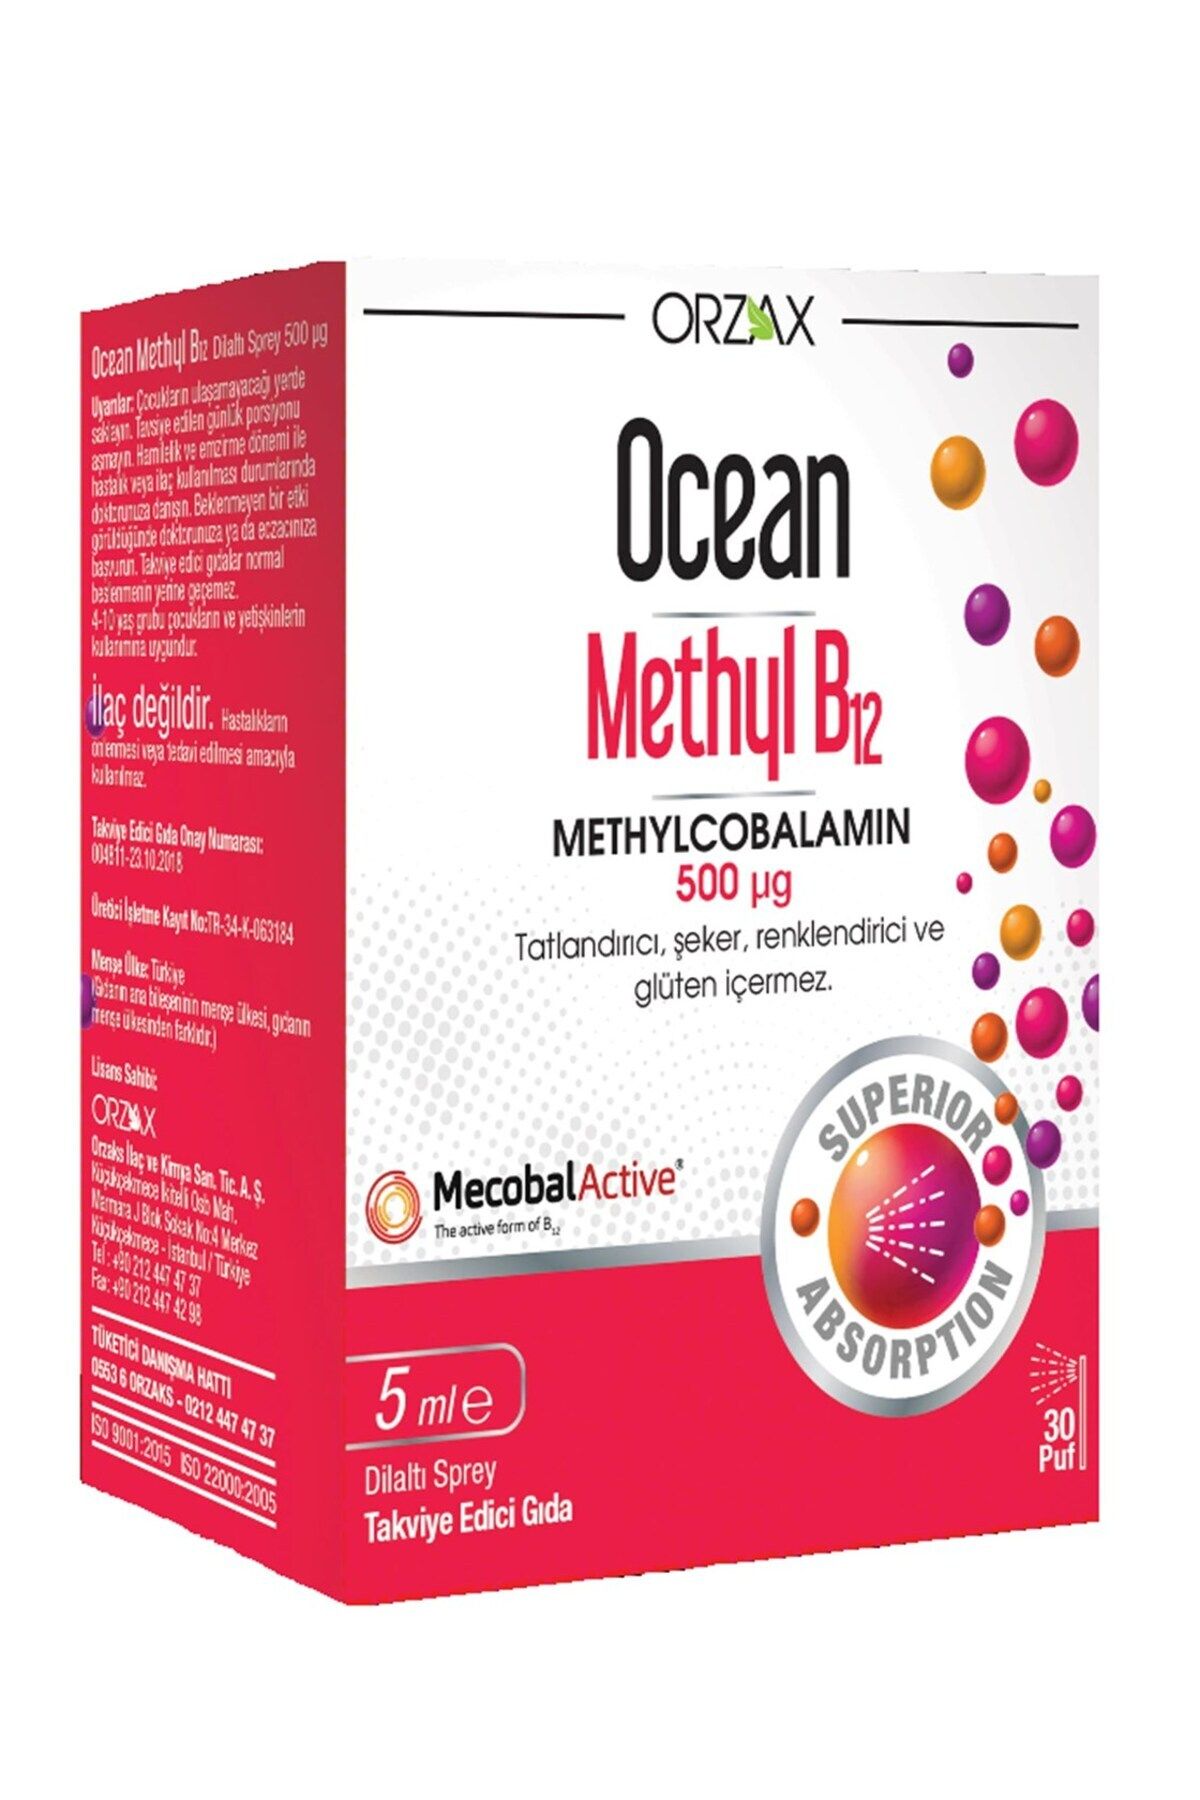 Orzax Ocean Methyl B12 500mcg Dil Altı Spreyi 5ml